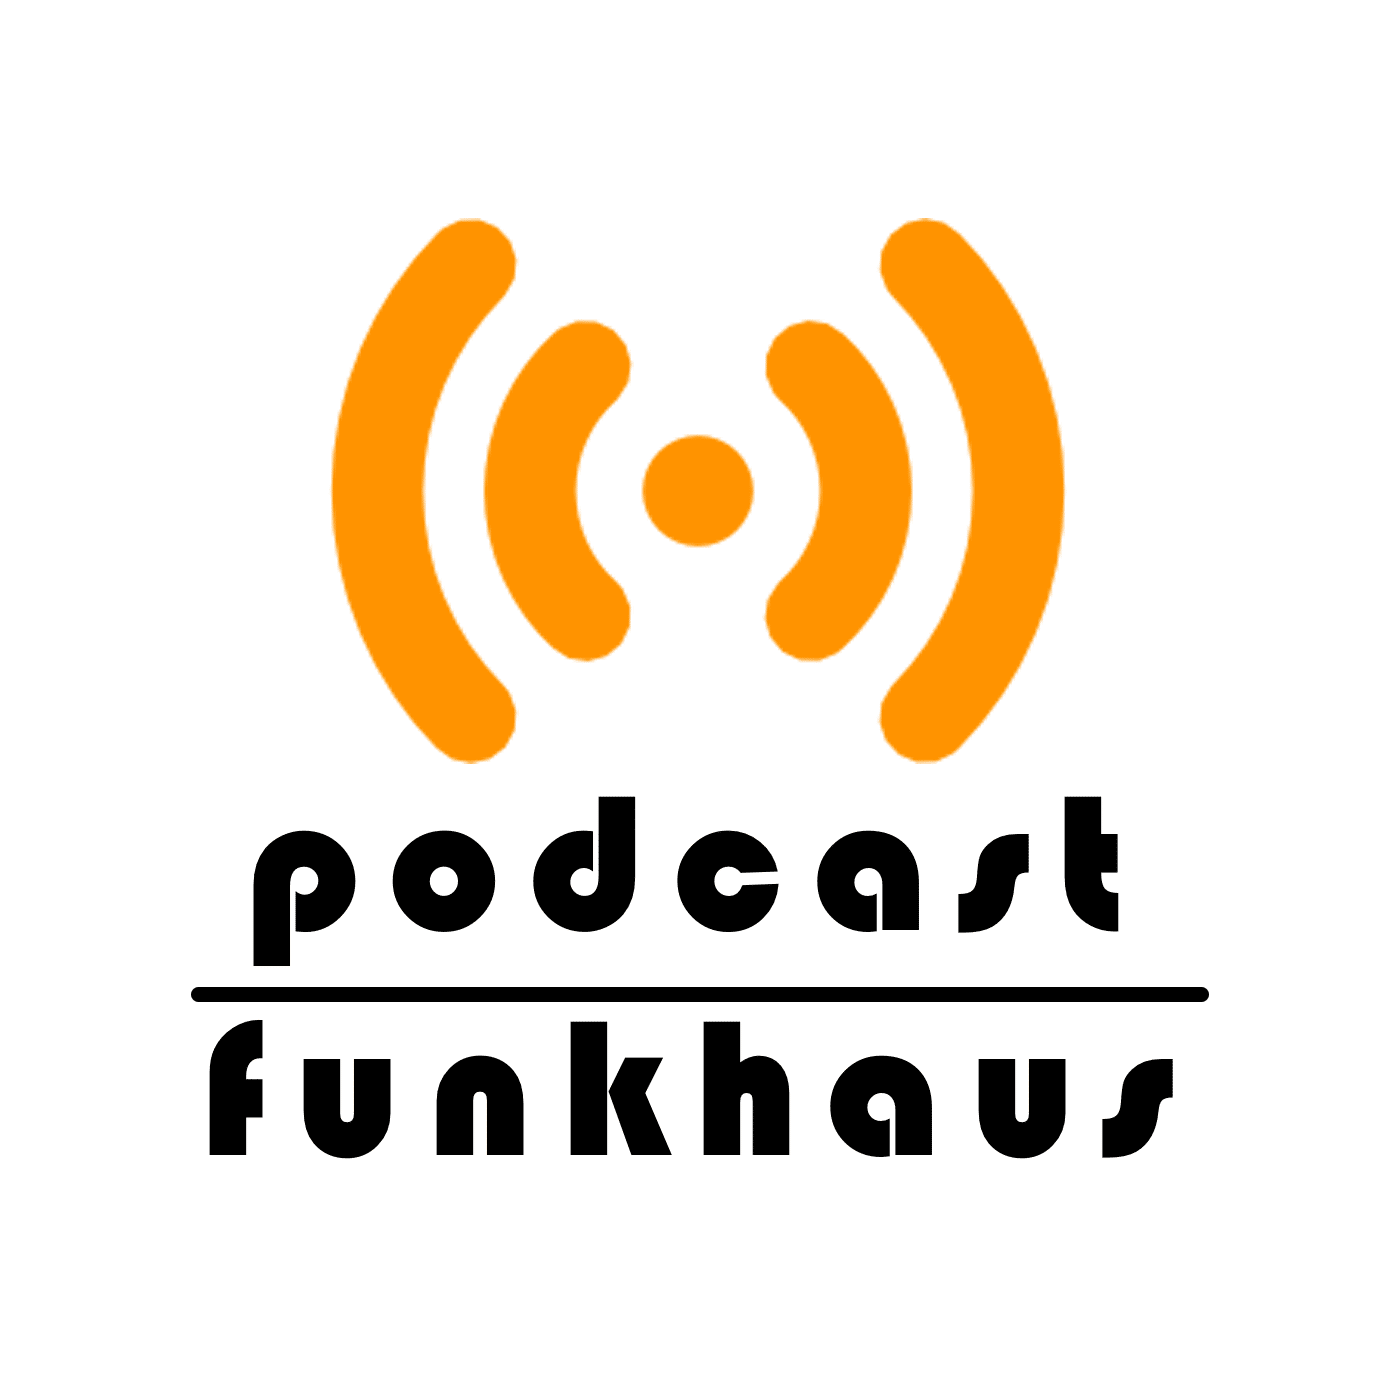 Podcastfunkhaus (aac)